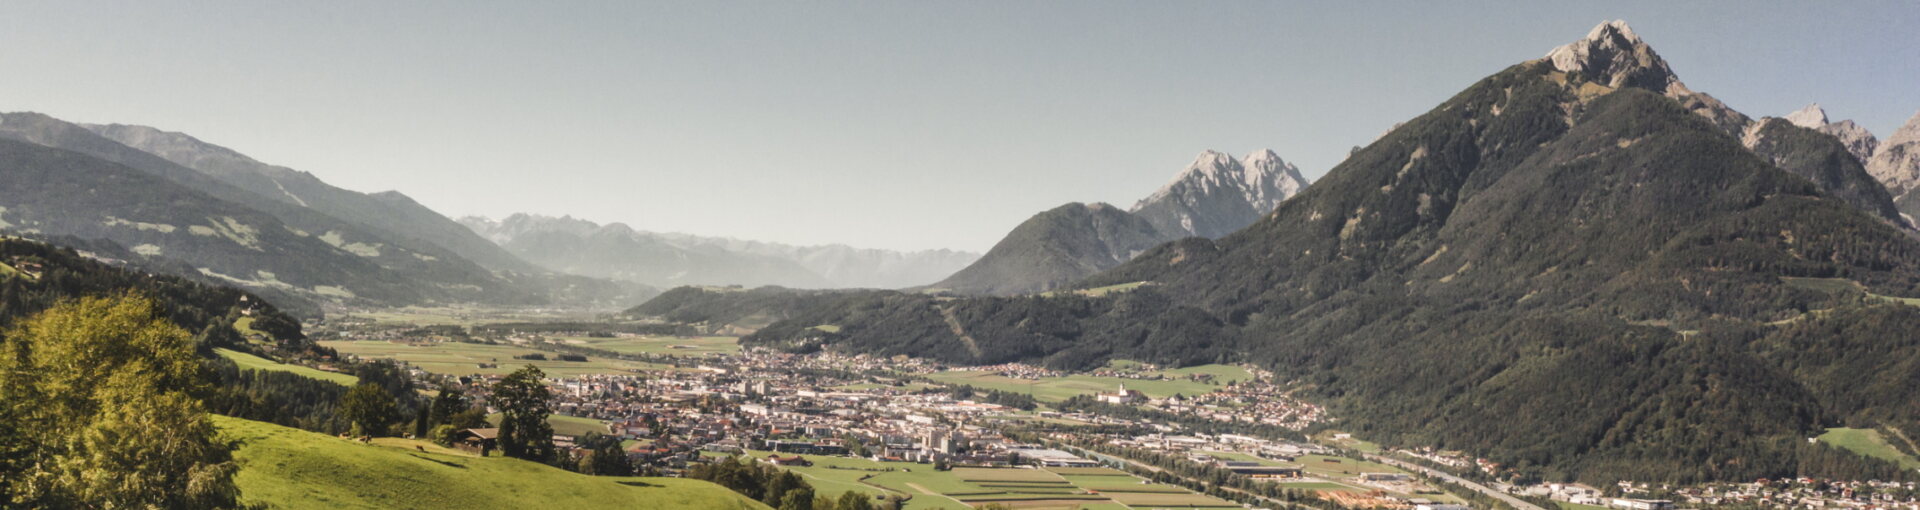 Außergewöhnliche Meetinglocations der Silberregion Karwendel